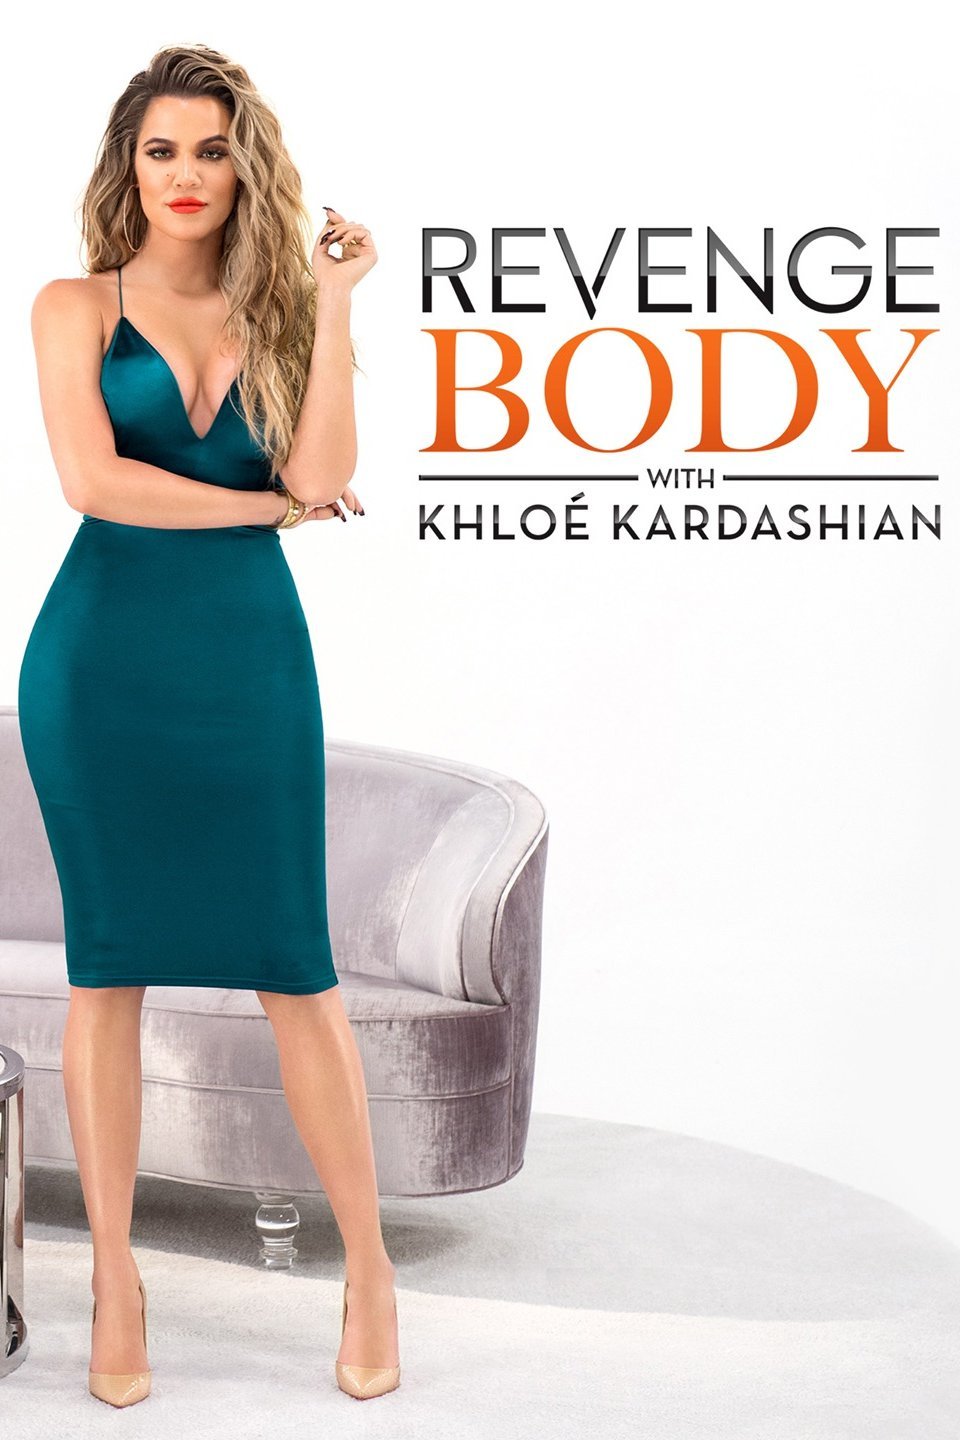 Khloe Kardashian's Journey to 'Revenge Body': Will It Succeed?  Revenge  body, Khloe kardashian revenge body, Khloe kardashian